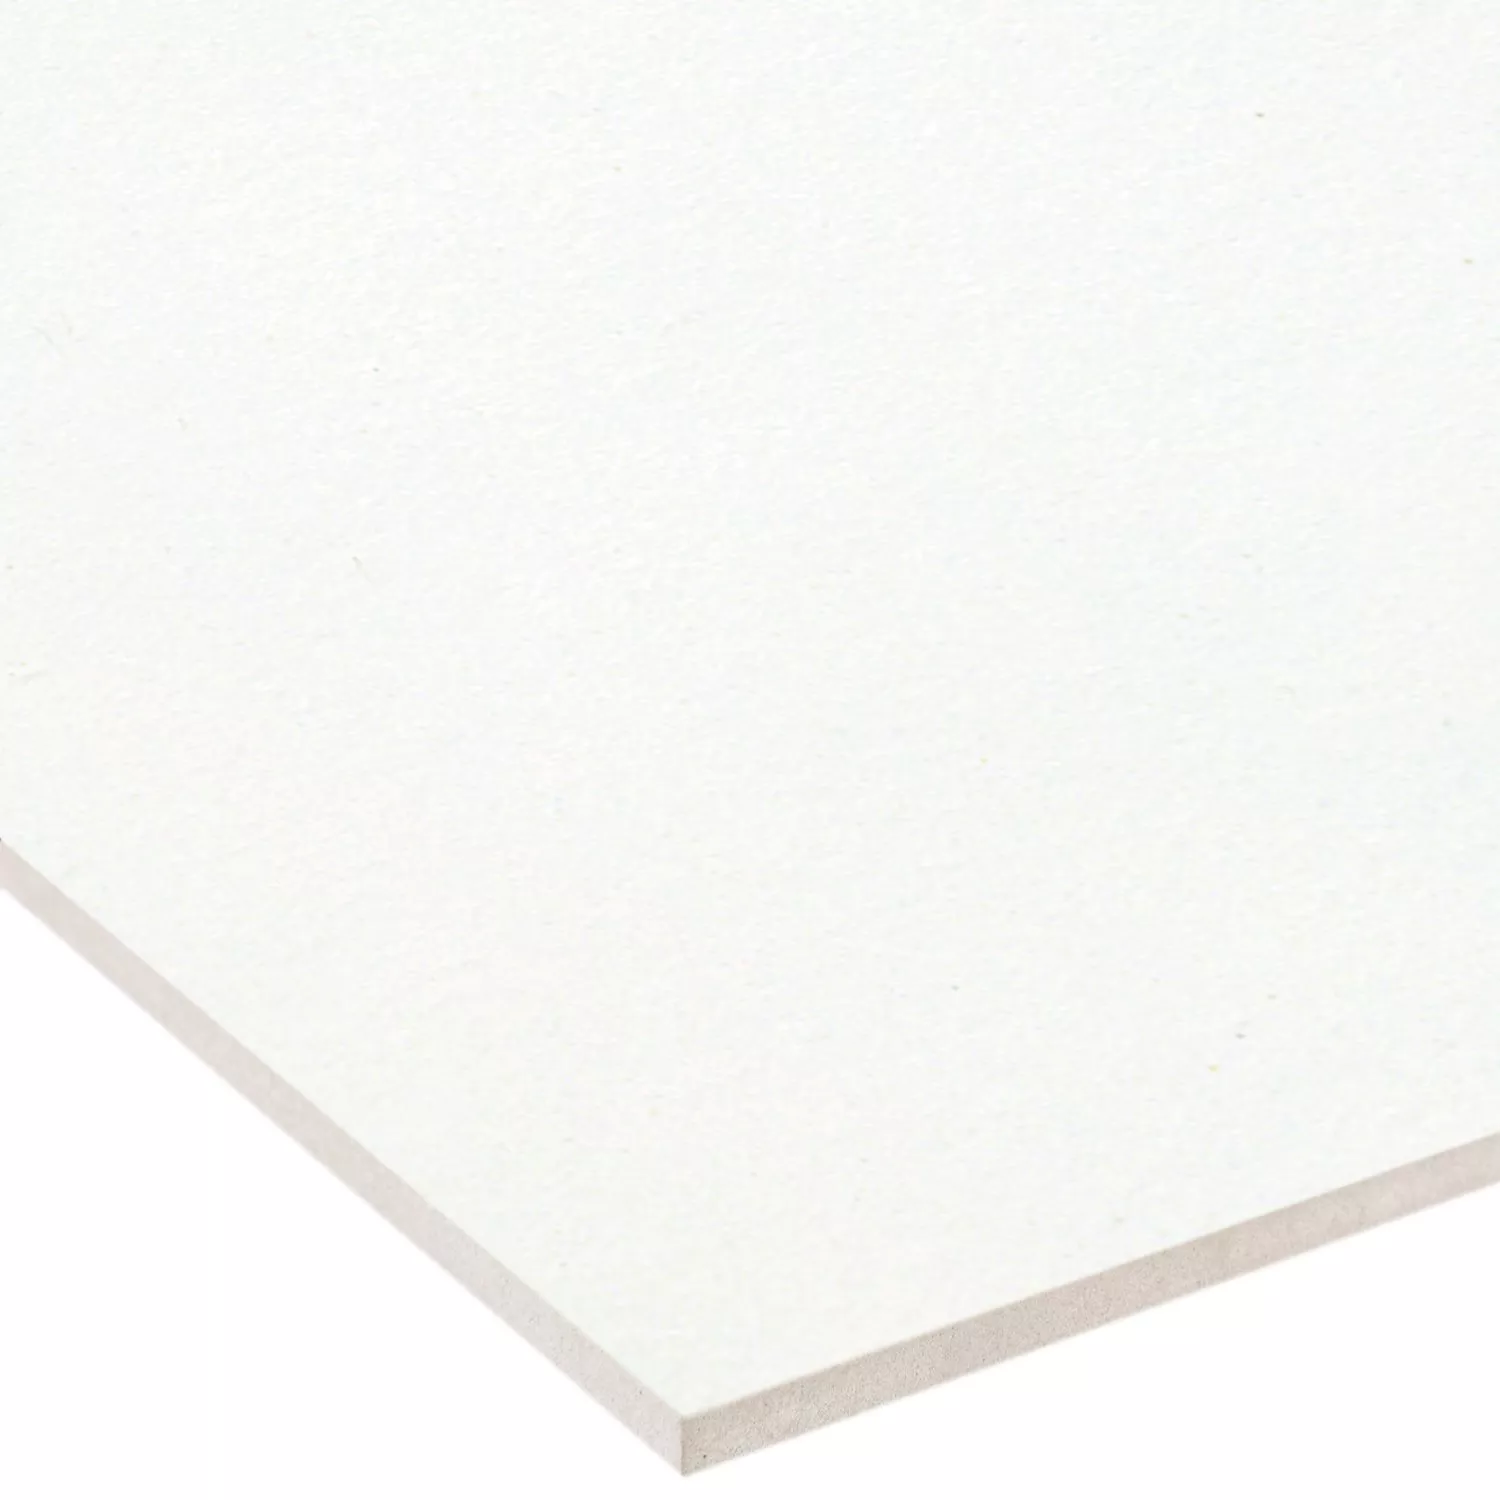 Sample Floor Tiles Adventure R10/B White Mat 15x15cm